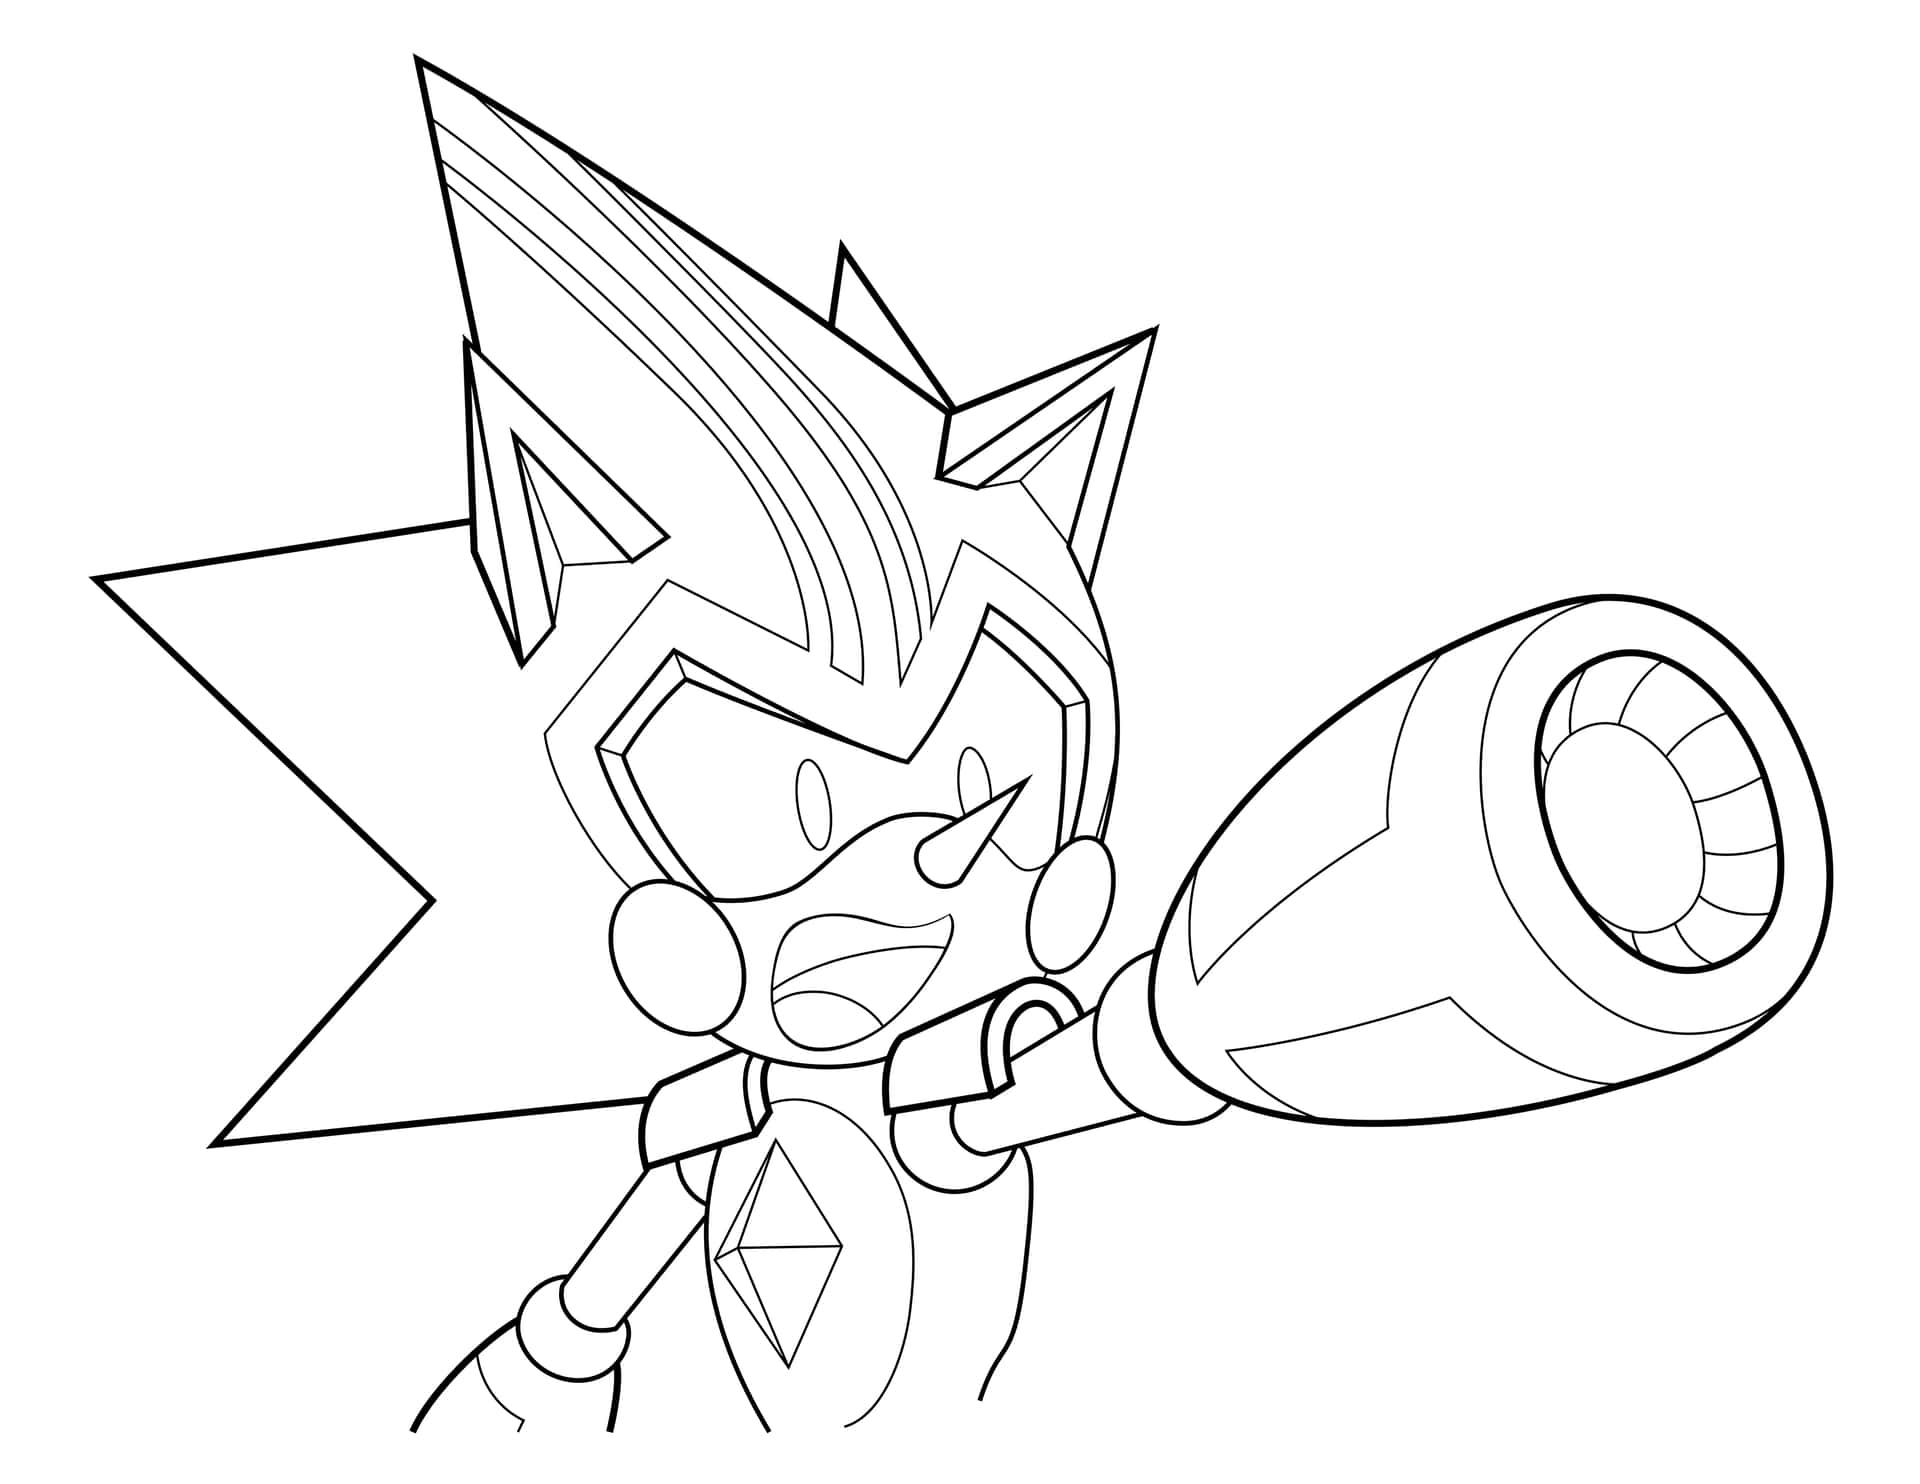 Sharddi Colorazione Di Sonic: Immagine Dell'attacco Di Metal Sonic.